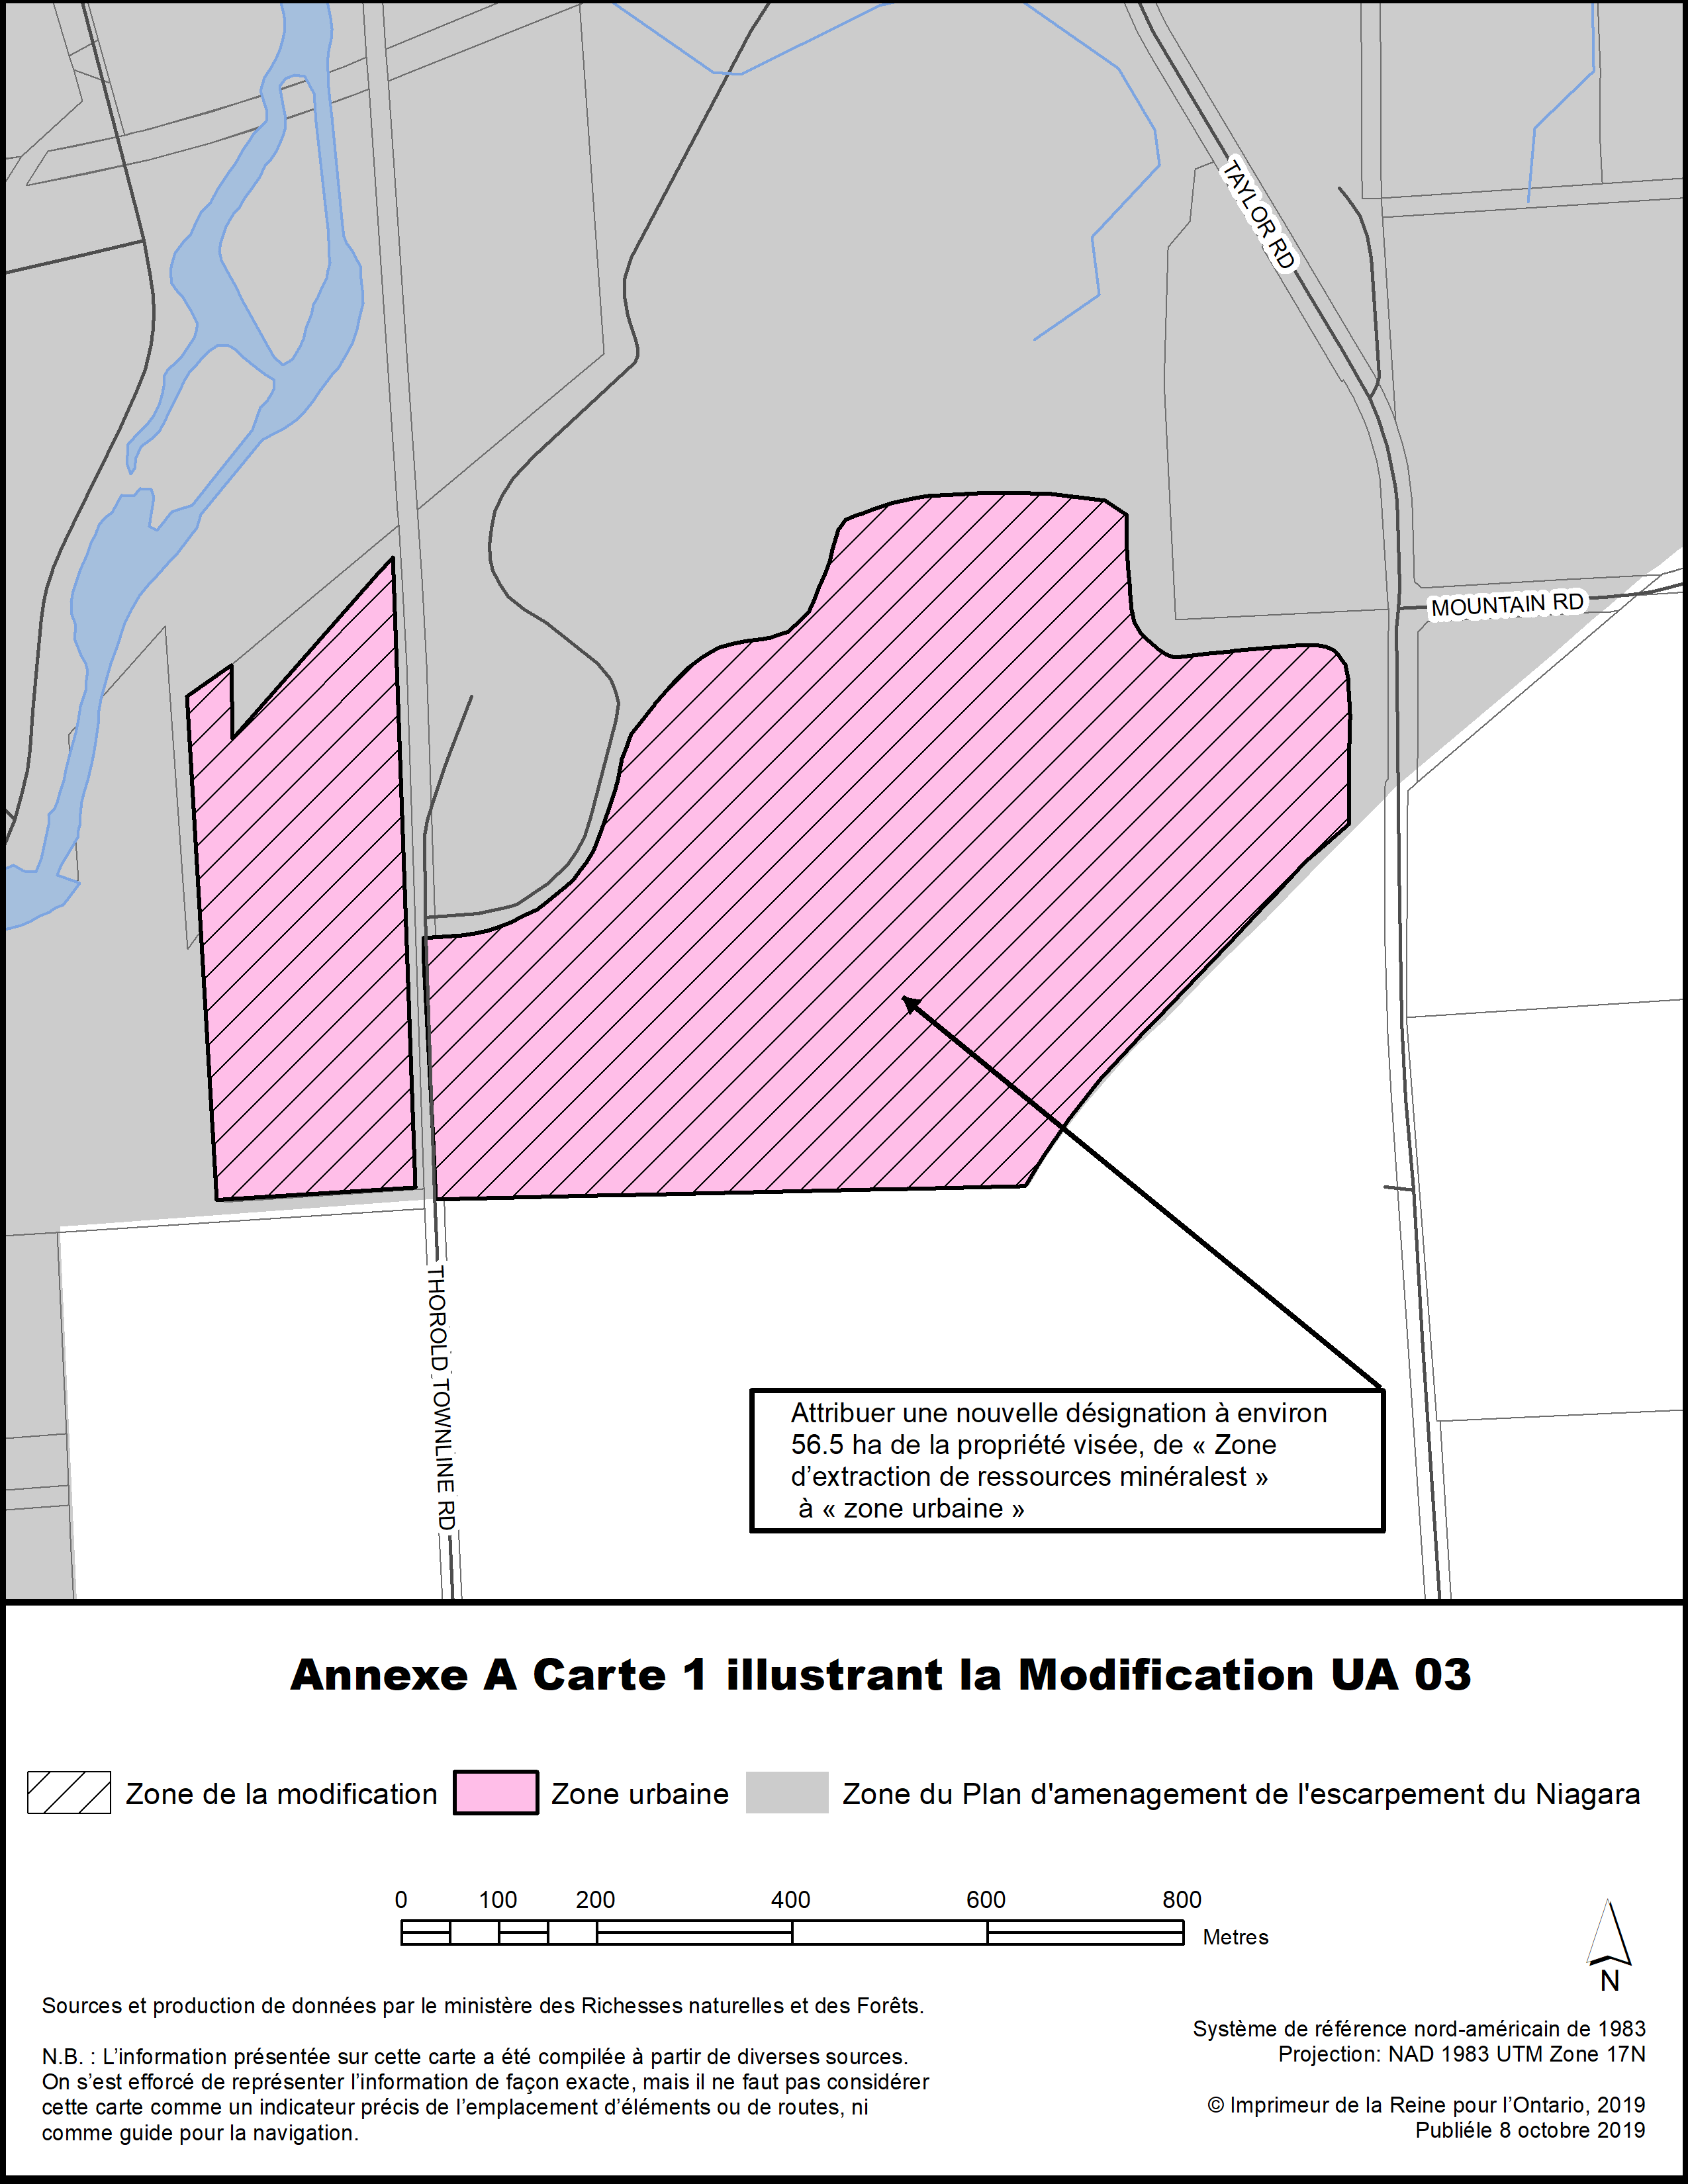 Annexe A Carte 1 illustrant la Modification UA 03.
Attribuer une nouvelle désignation à environ 56.5 ha de la propriété visée, de « Zone d'extration de ressources minéralest » à « zone urbaine ».